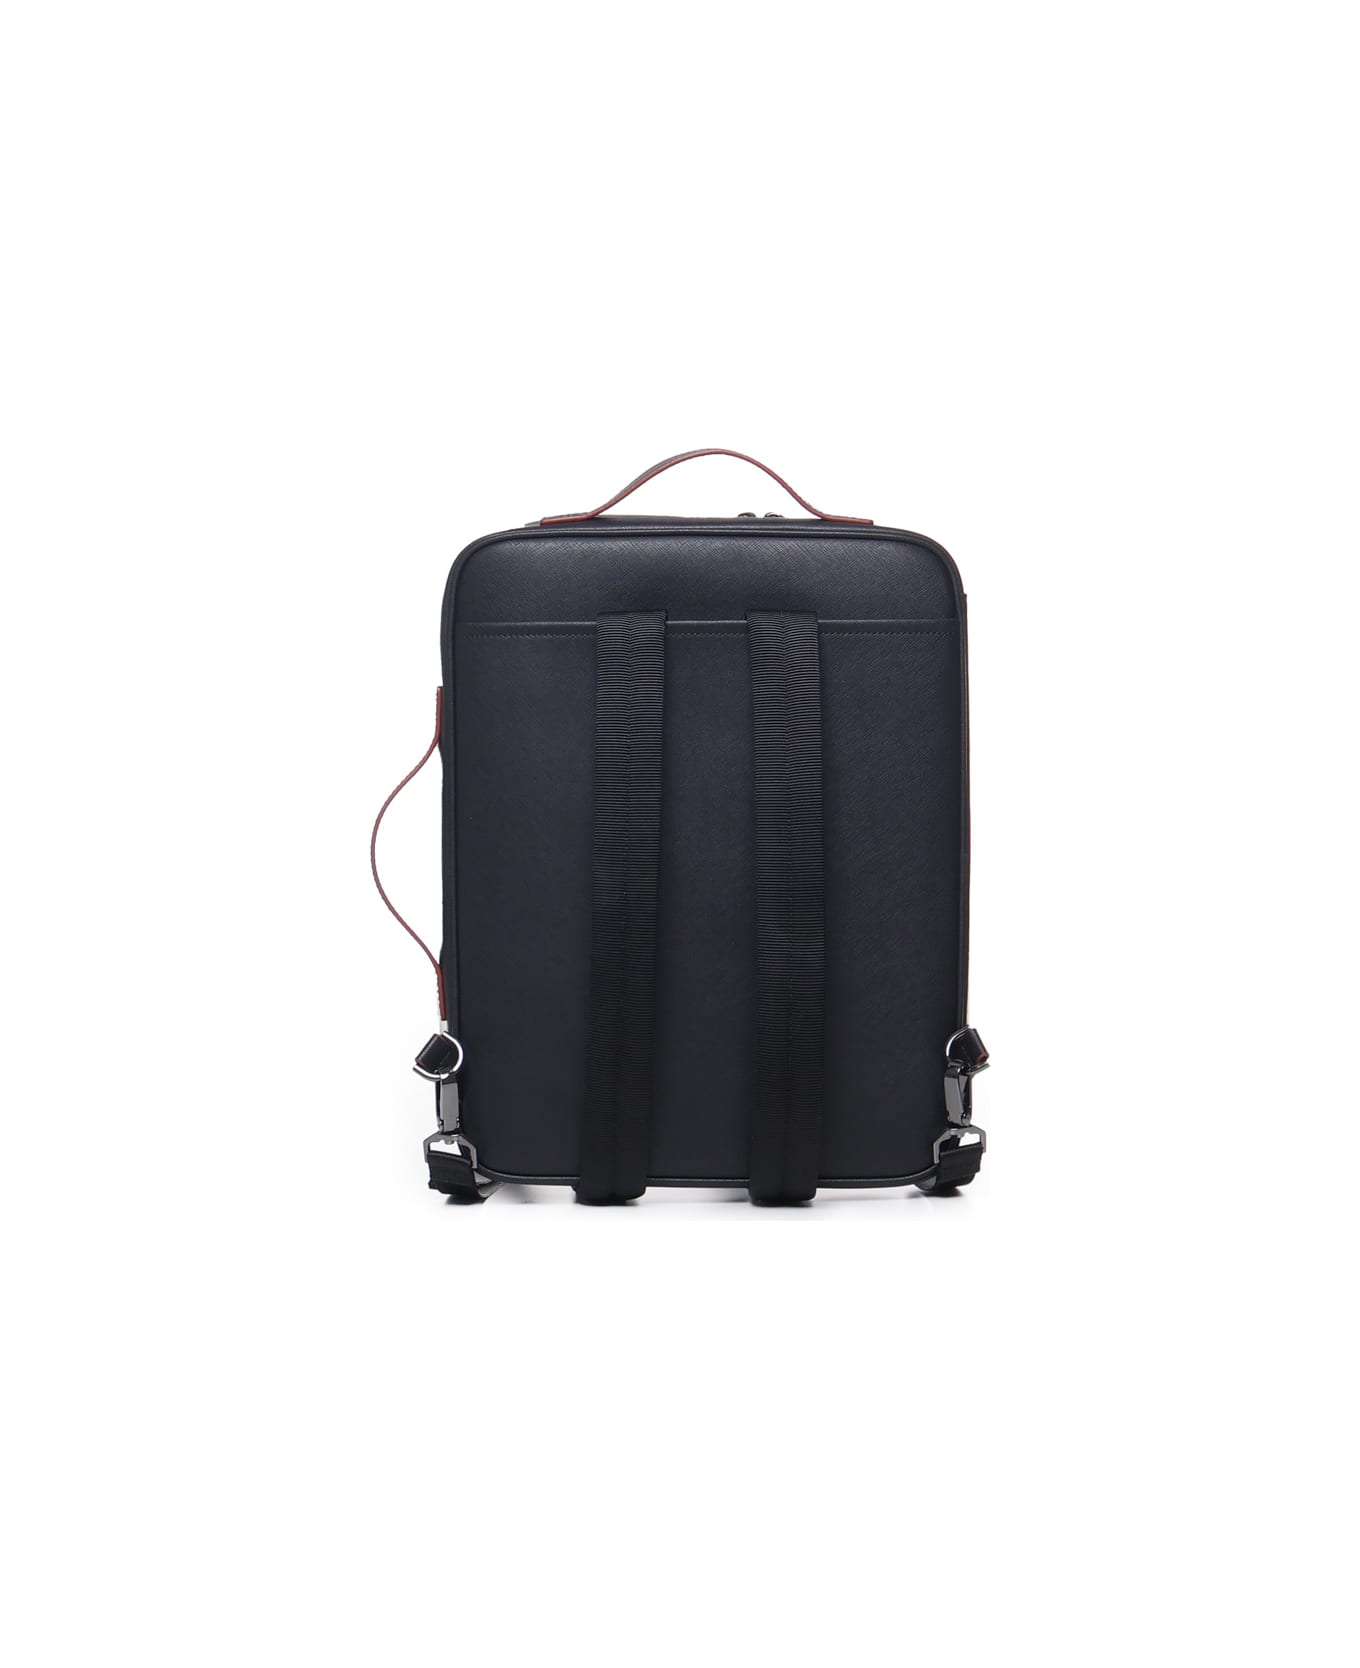 Giorgio Armani Business Bag With Shoulder Straps In Regenerated Saffiano And Recycled Nylon Giorgio Armani